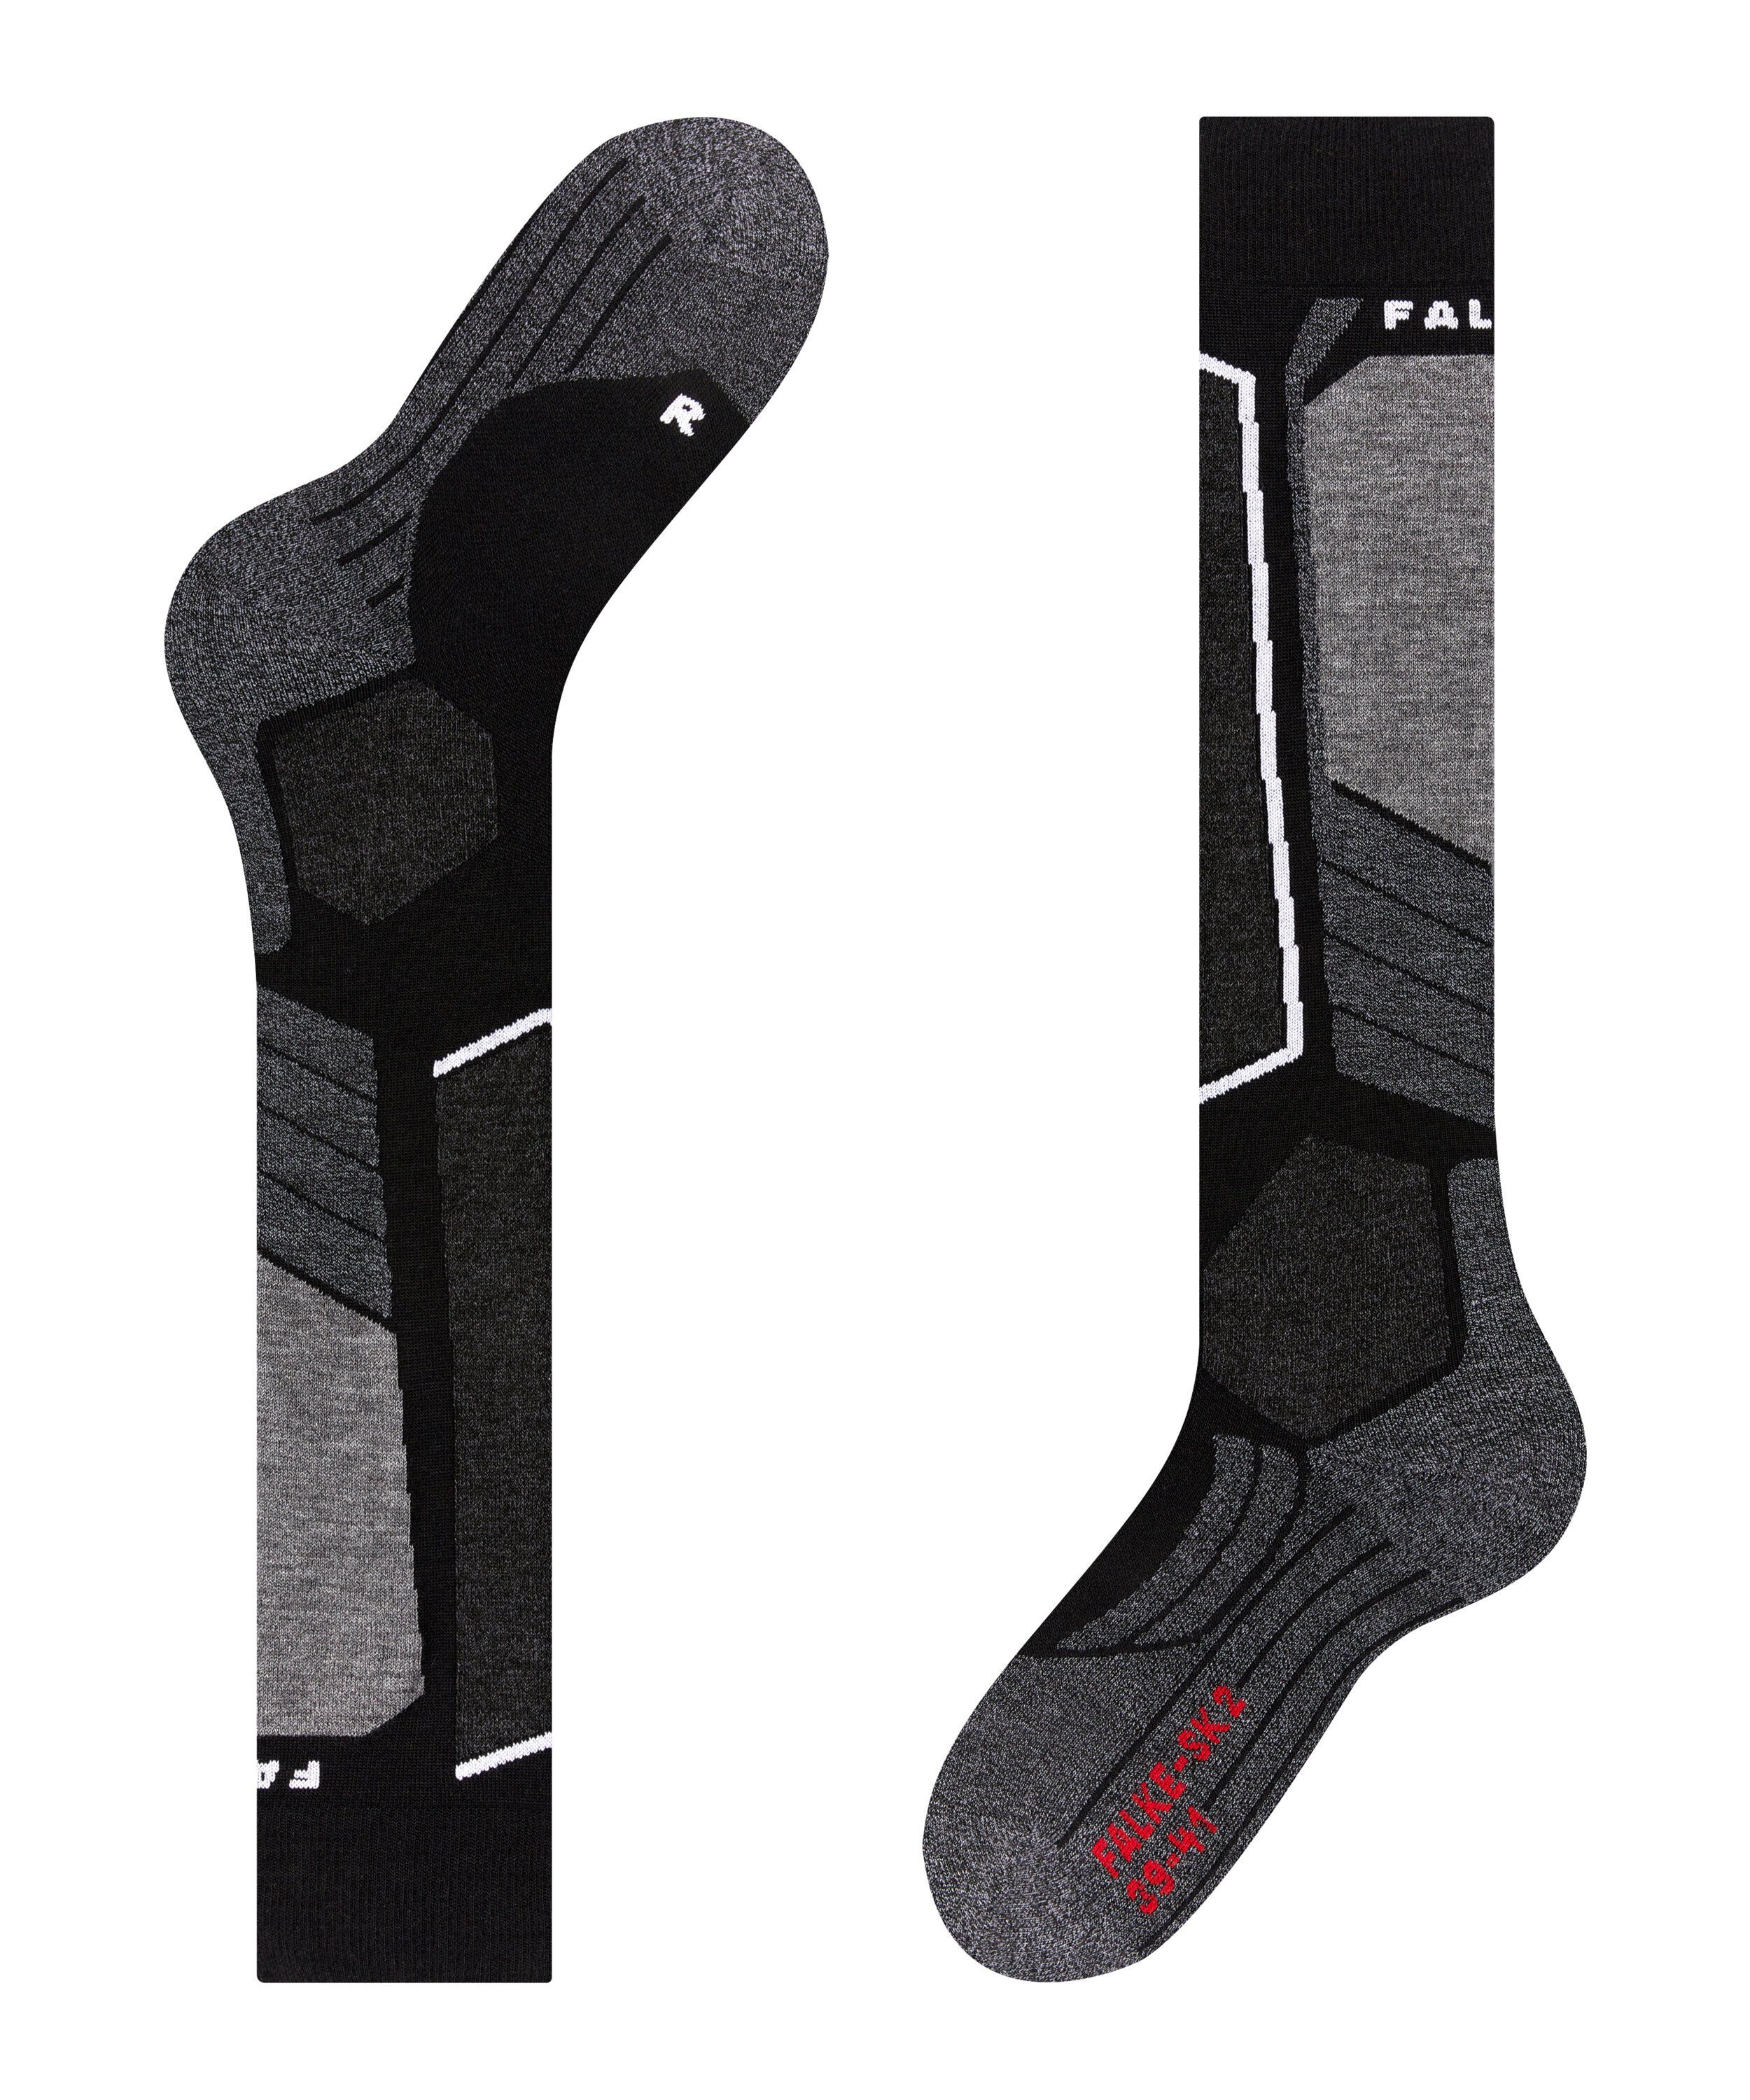 FALKE Skisocken SK2 Intermediate (1-Paar) mit (3010) Komfort black-mix für und Polsterung mittelstarker Kontrolle